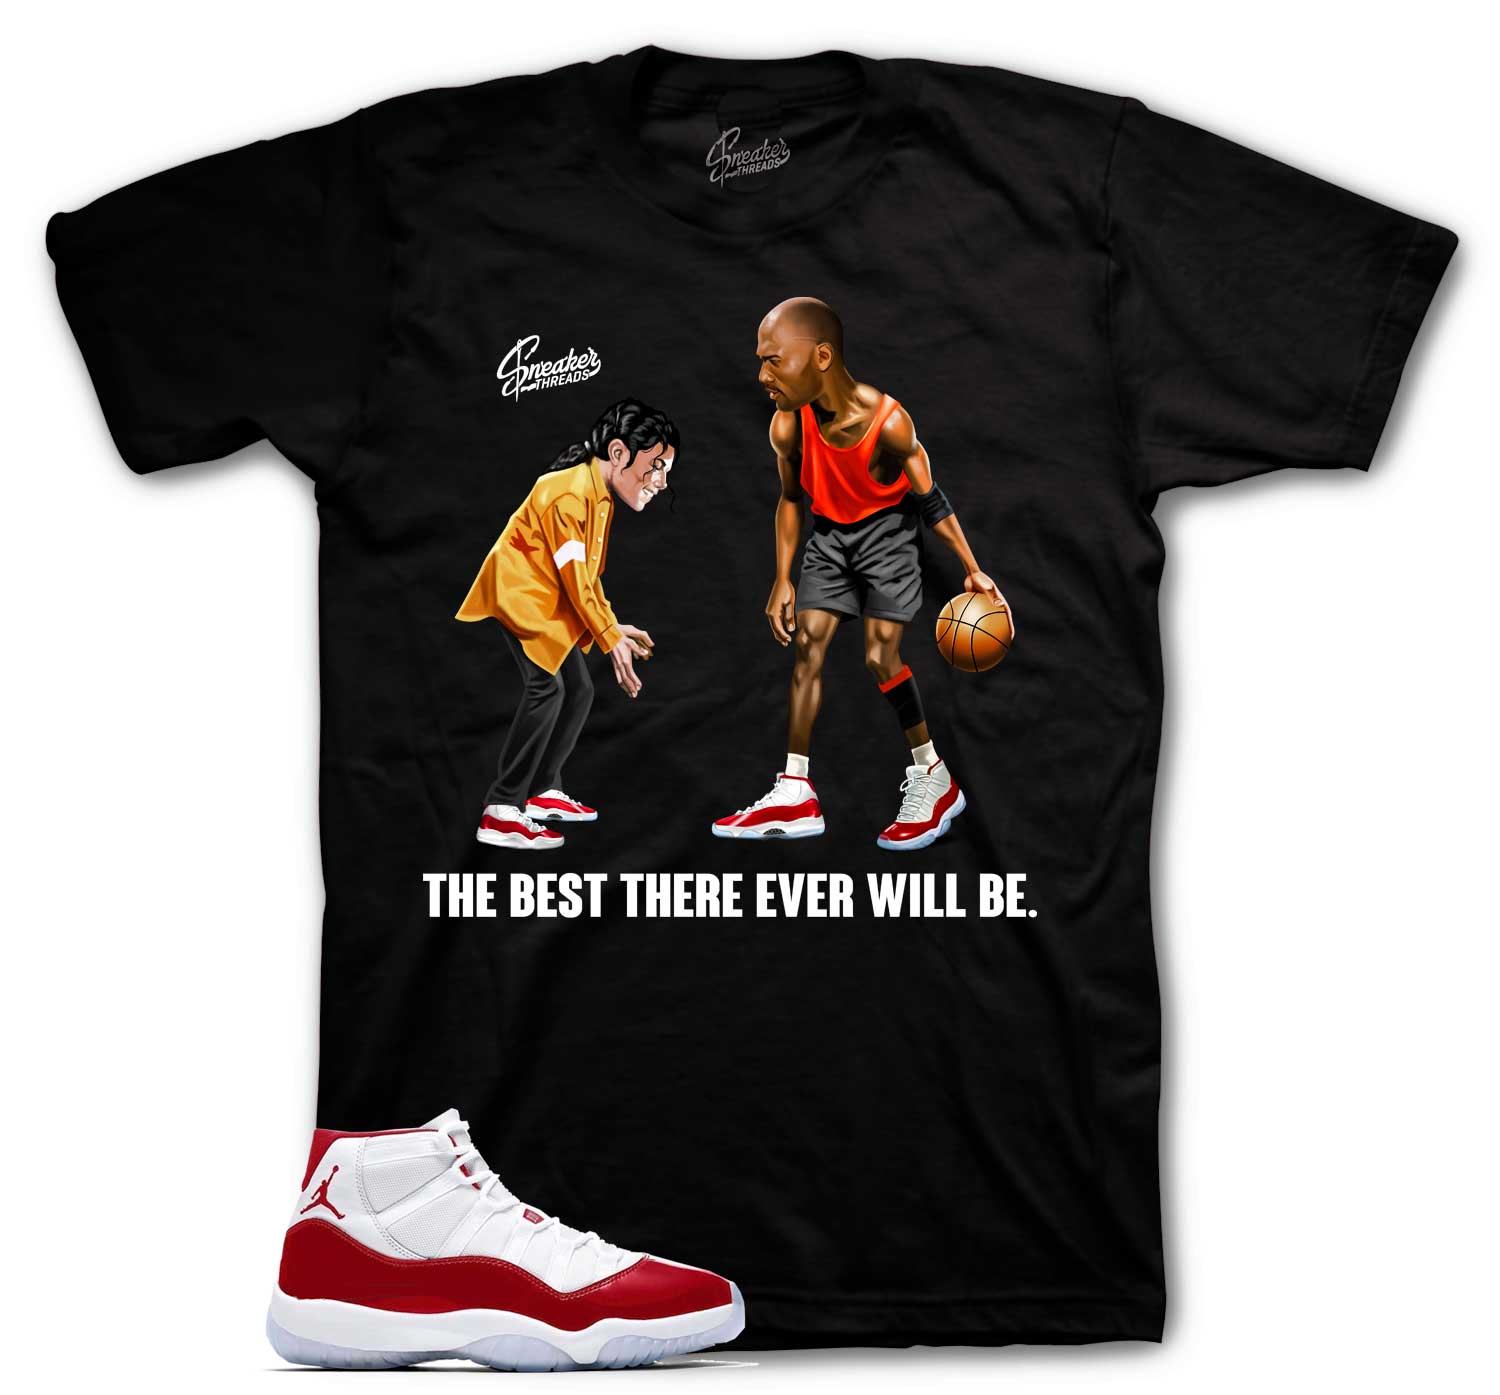 The Best T-Shirt - Retro 11 Cherry Shirt